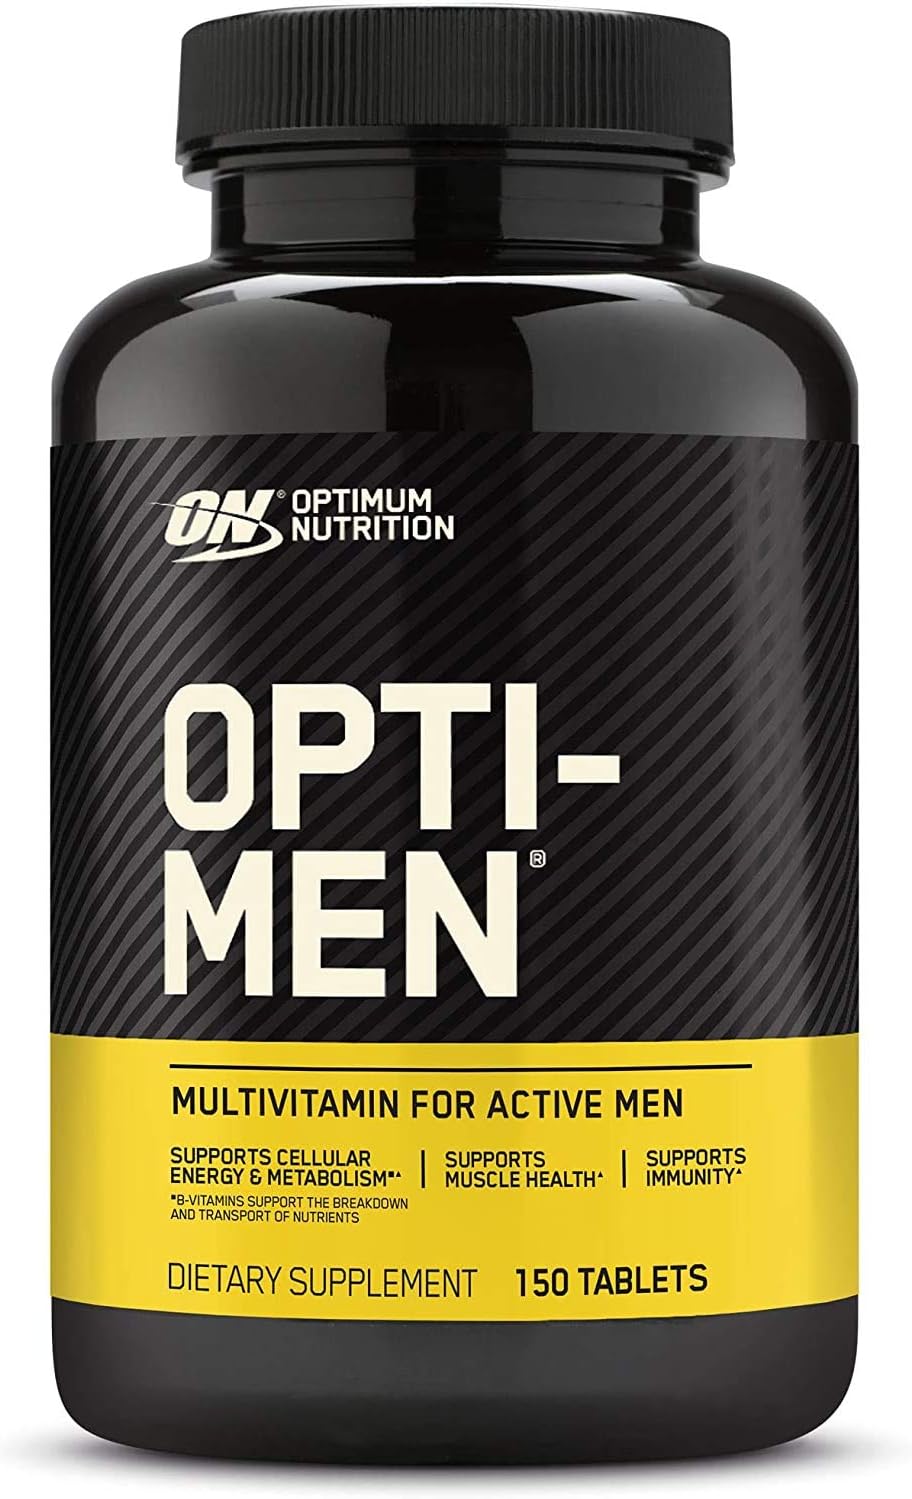 قرص اپتیمن مولتی ویتامین اپتیموم اورجینال 150 عددی مدل Optimum Nutrition Opti-men - ارسال 10 الی 15 روز کاری